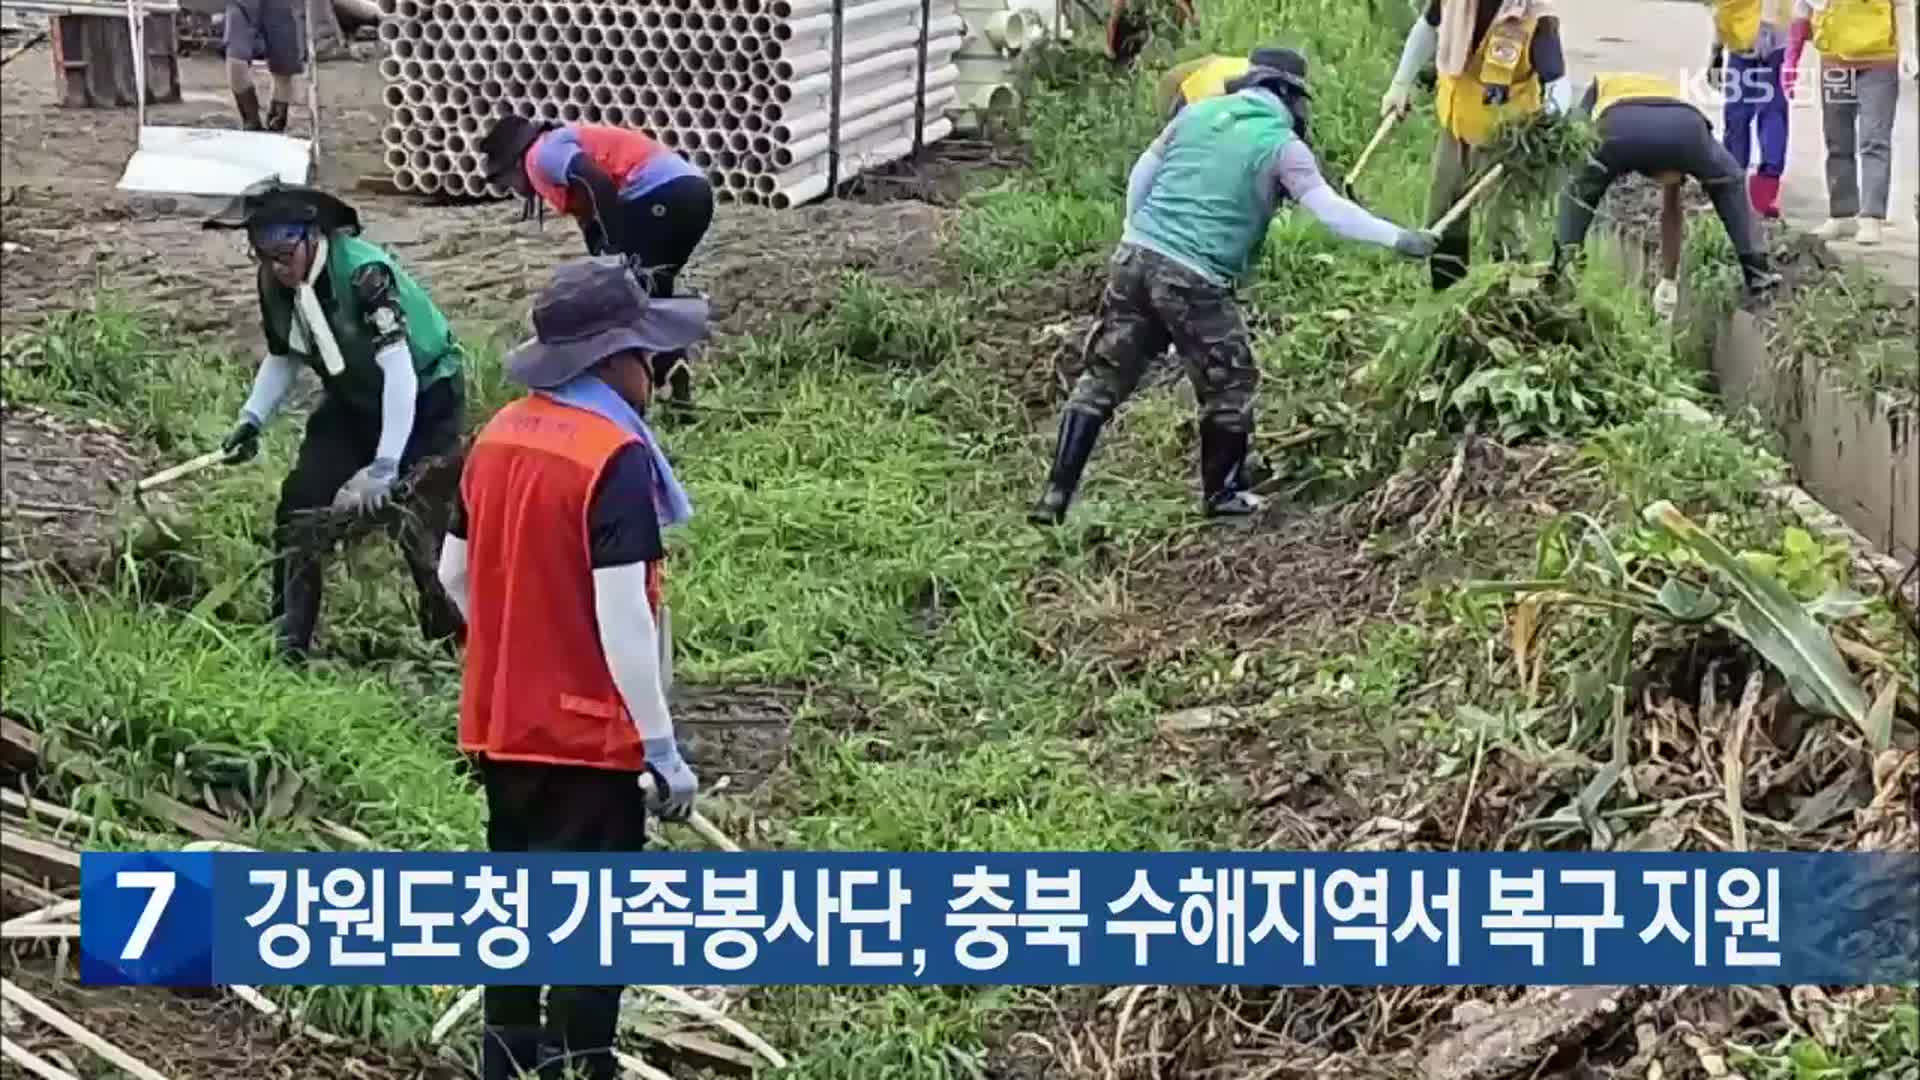 강원도청 가족봉사단, 충북 수해지역서 복구 지원